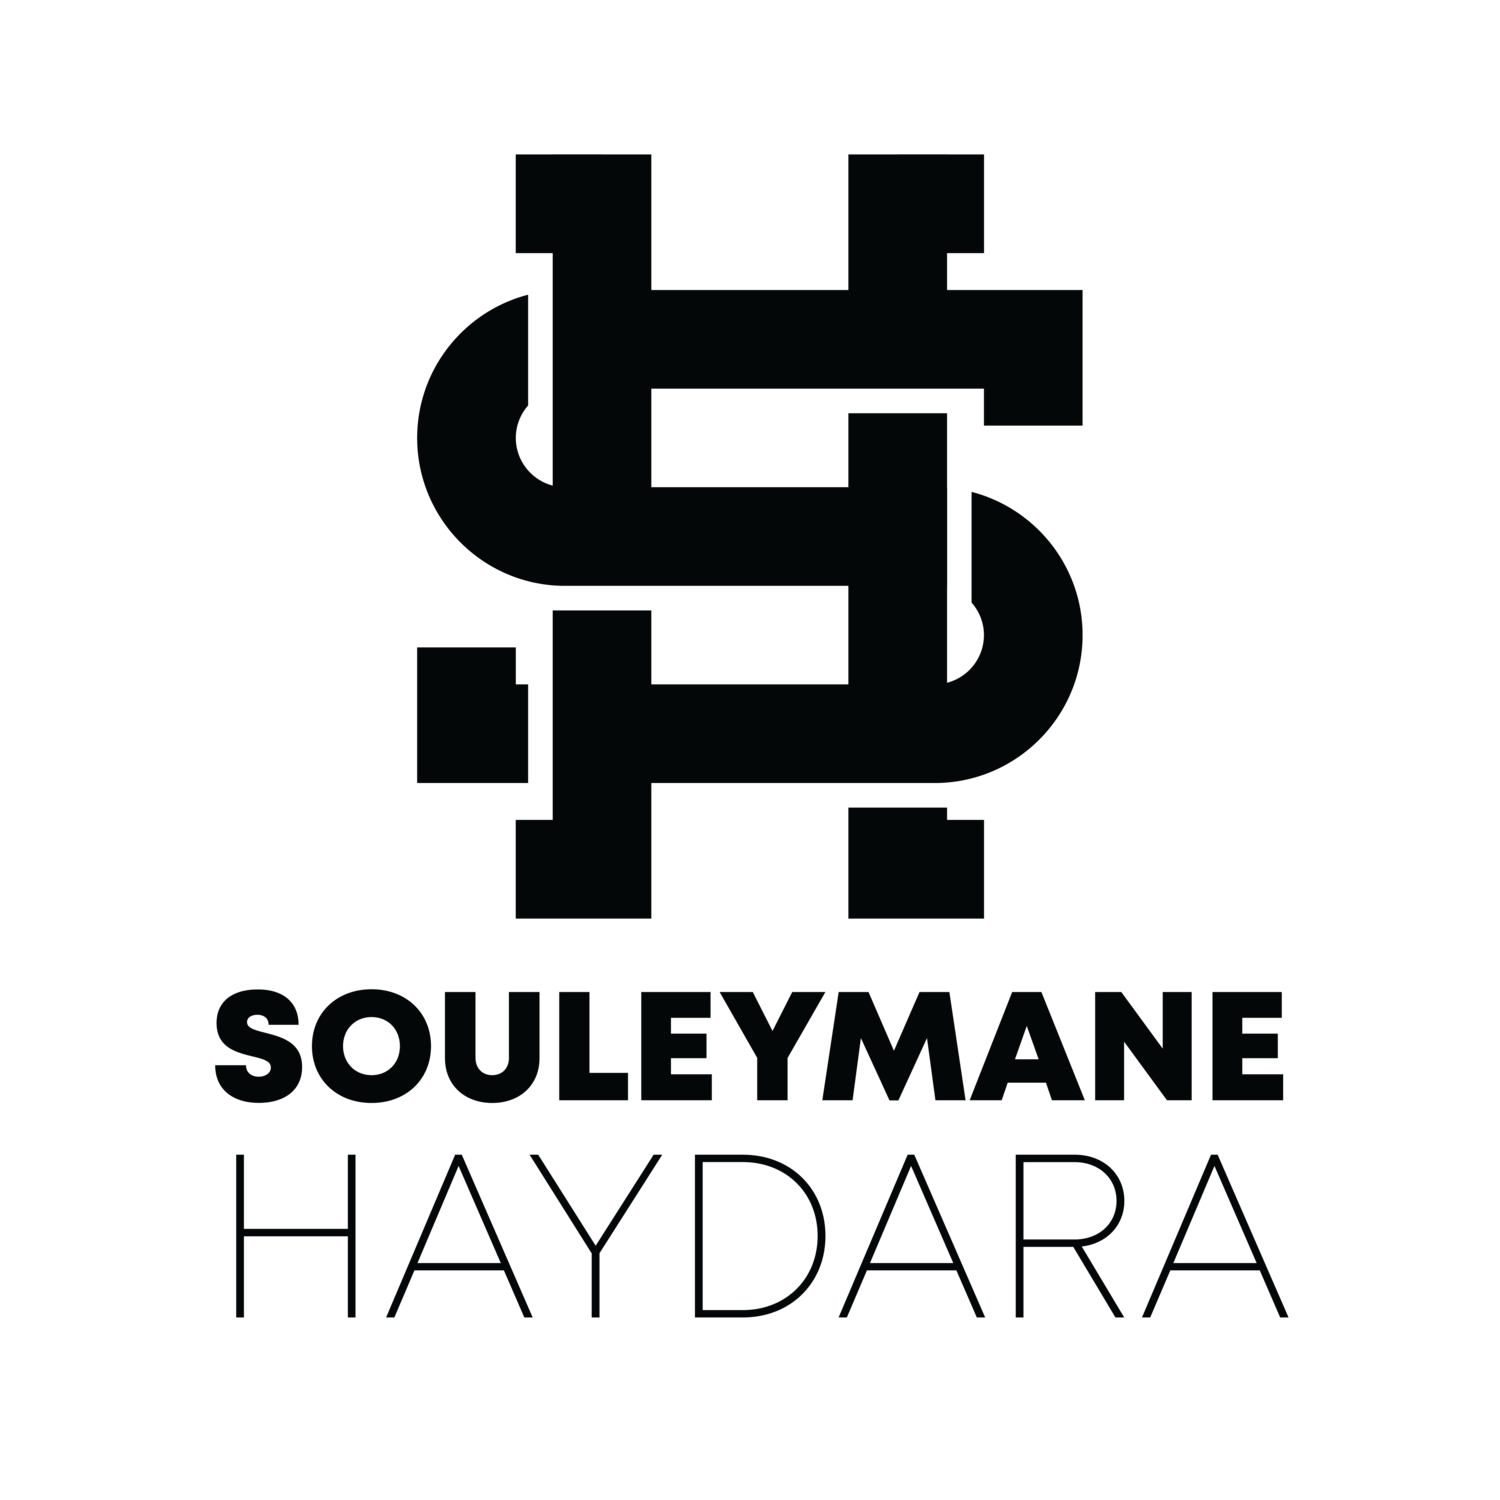 Souleymane